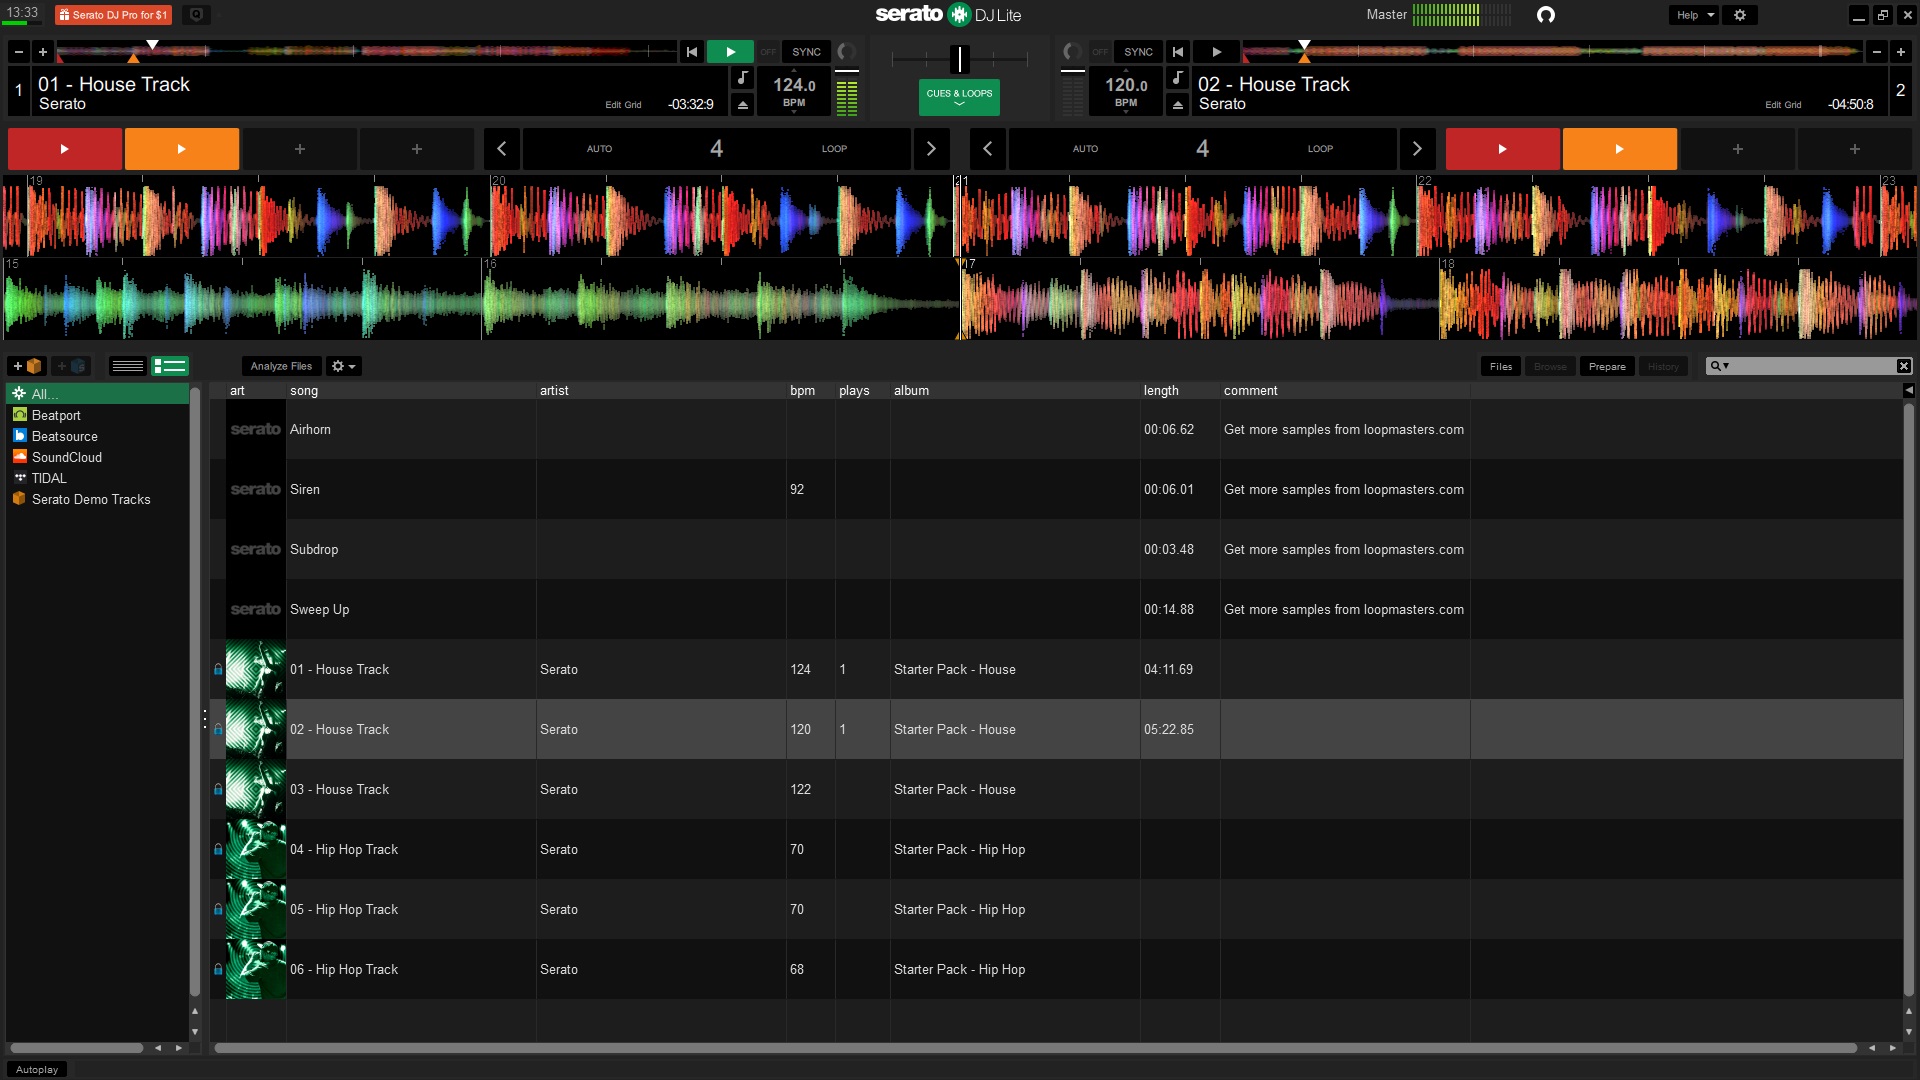 instal the last version for ipod Serato DJ Pro 3.0.10.164